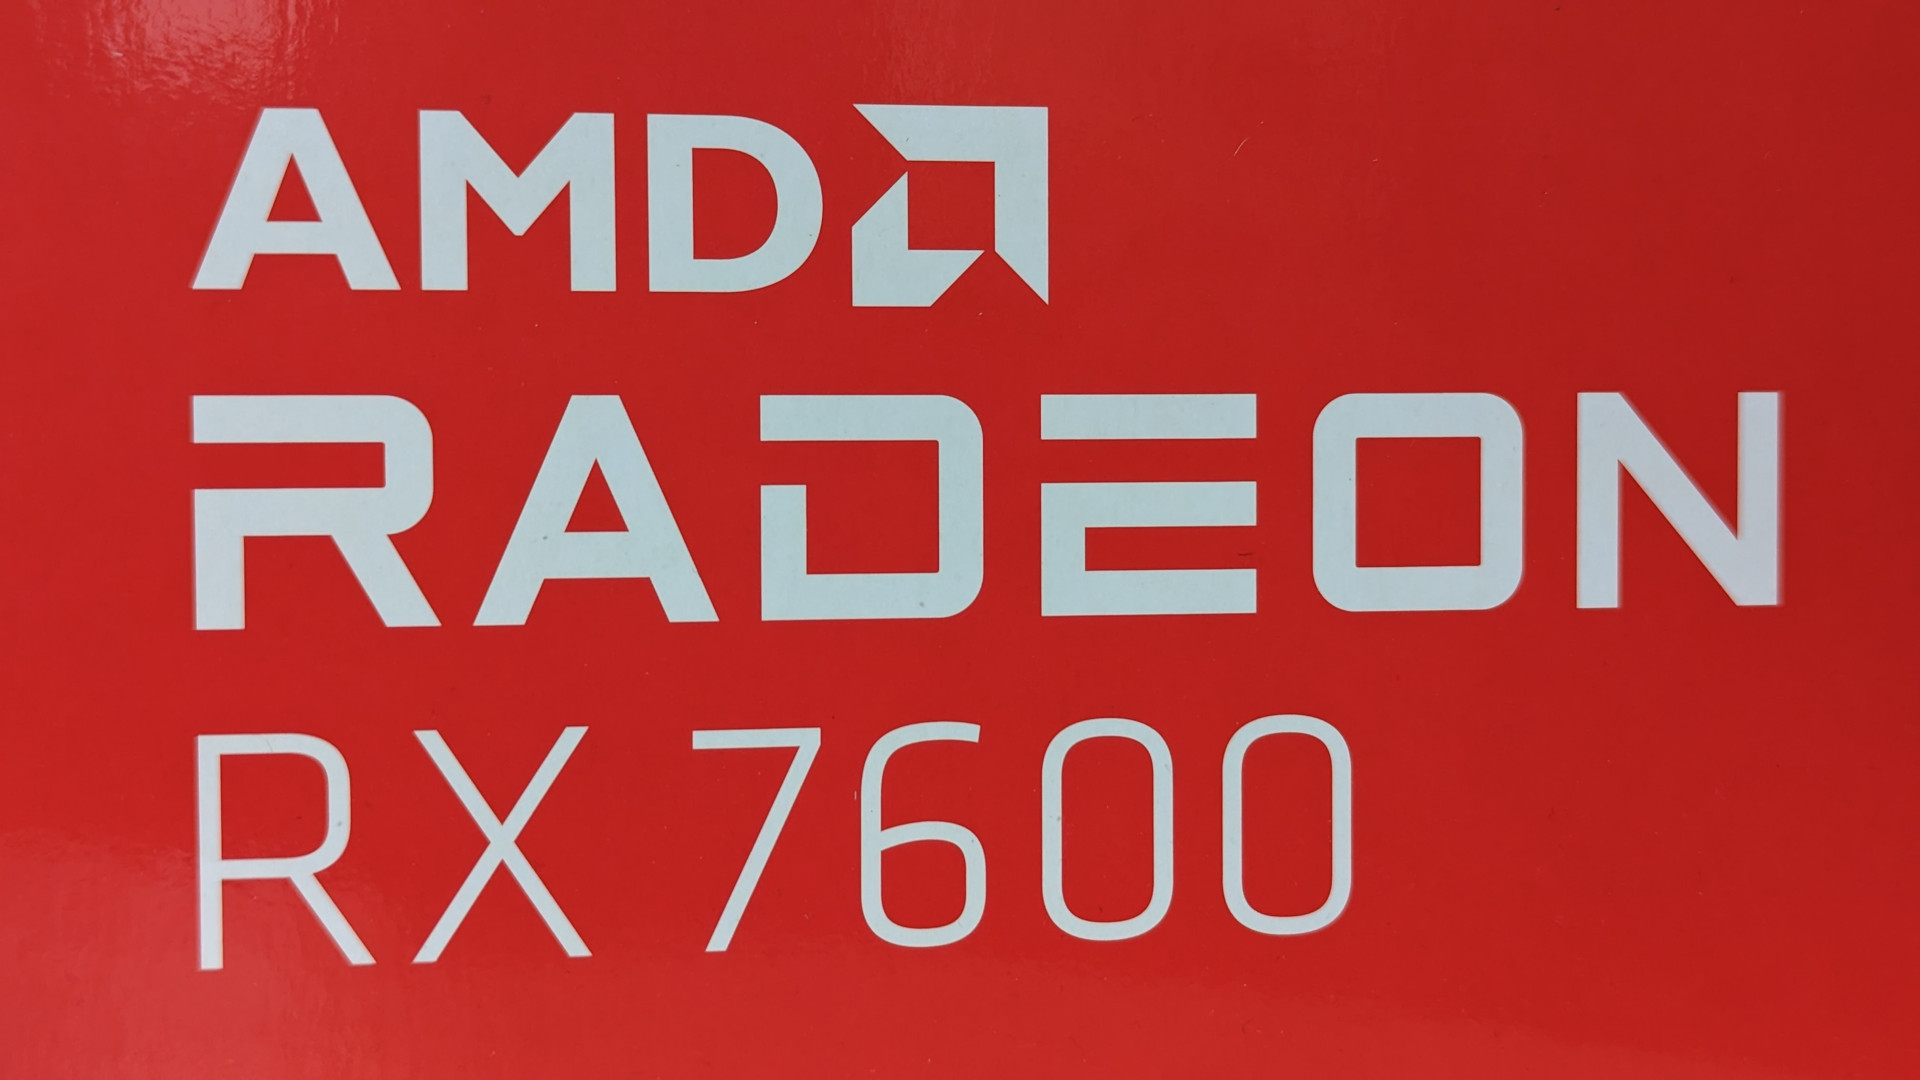 Test de l'AMD Radeon RX 7600 : Le texte blanc officiel 'AMD Radeon RX 7600' sur fond rouge